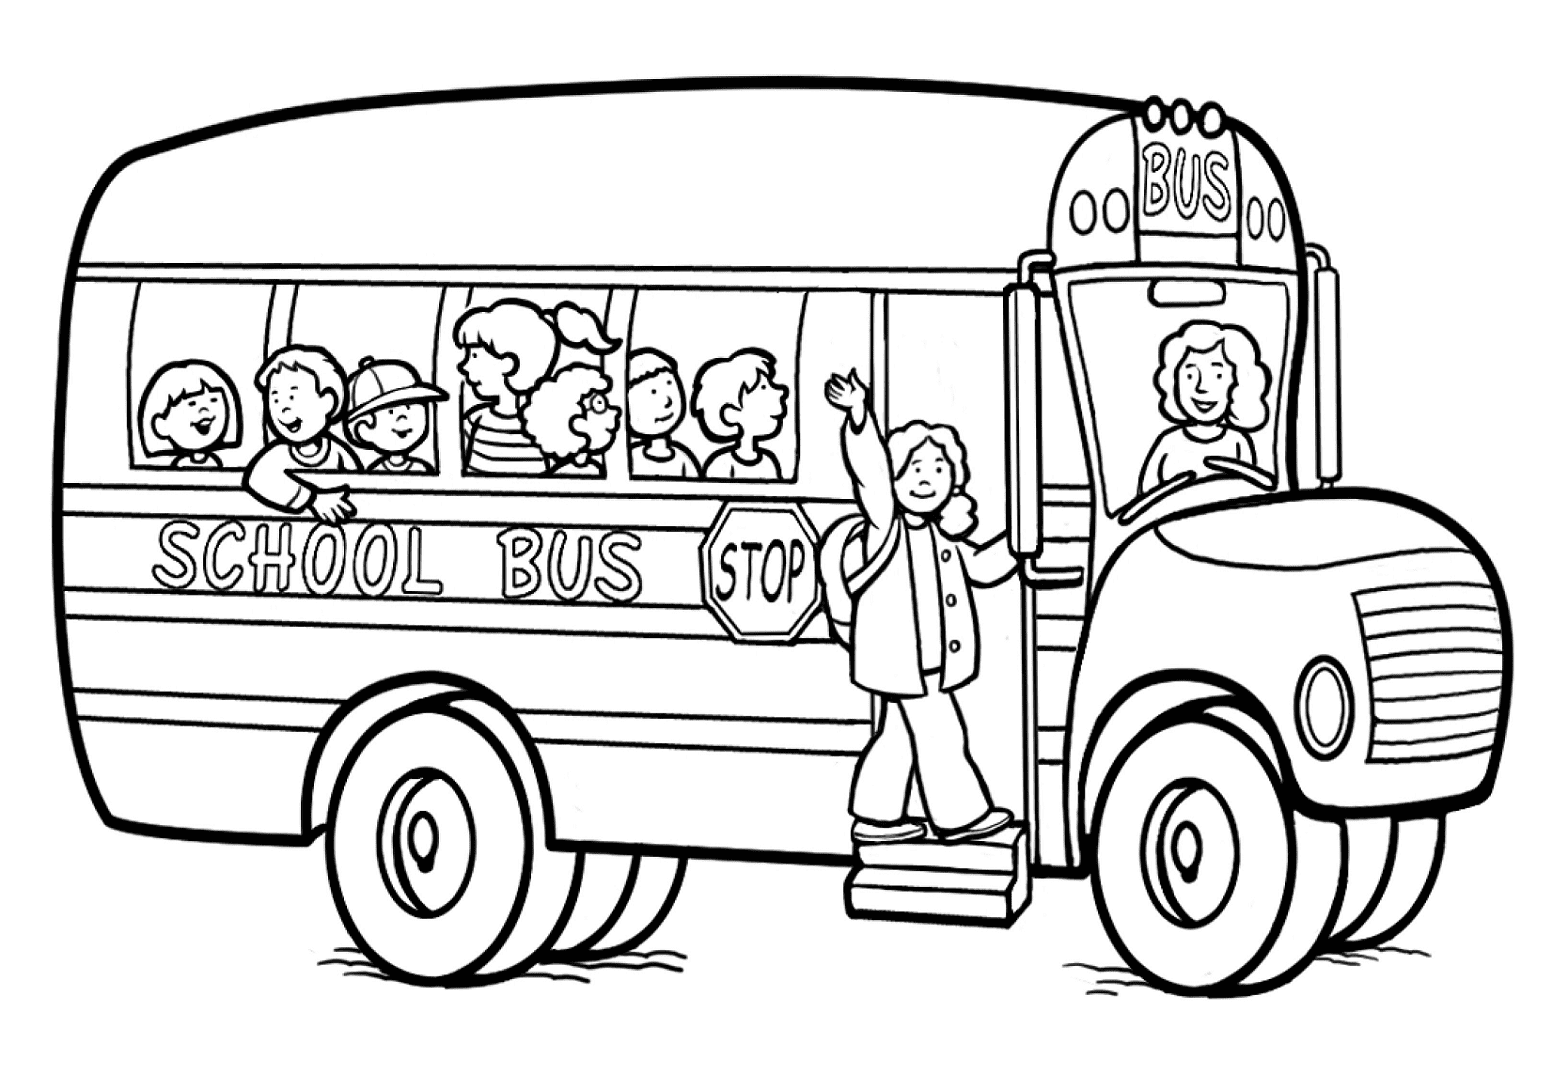 Image d'autobus scolaire provenant d'un autobus scolaire